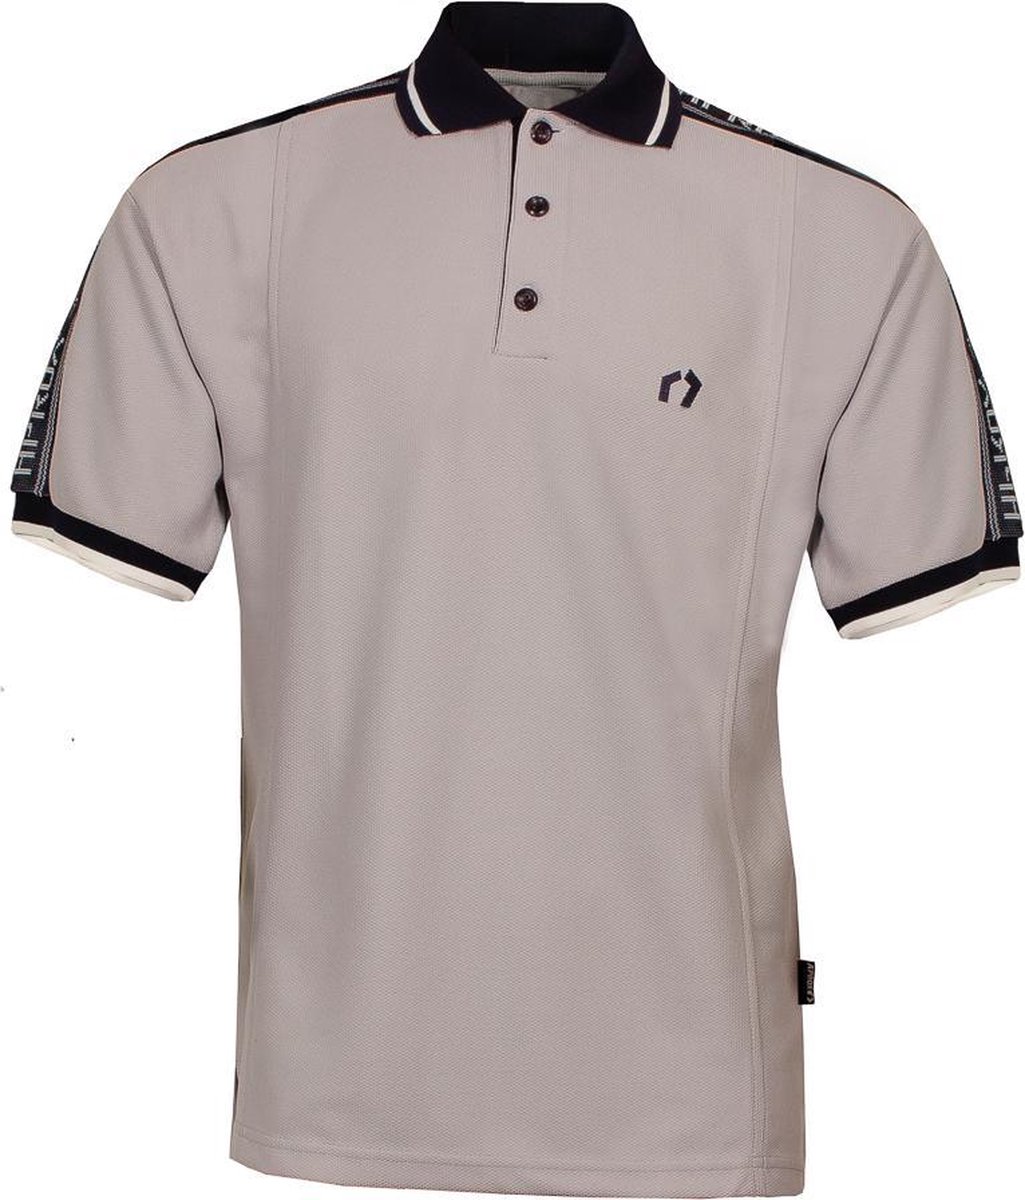 Heren jaren 50 Vintage Look polo shirt van ons merk A’prox Grijs met tekst op mouwen PSH5075S Maat XXL